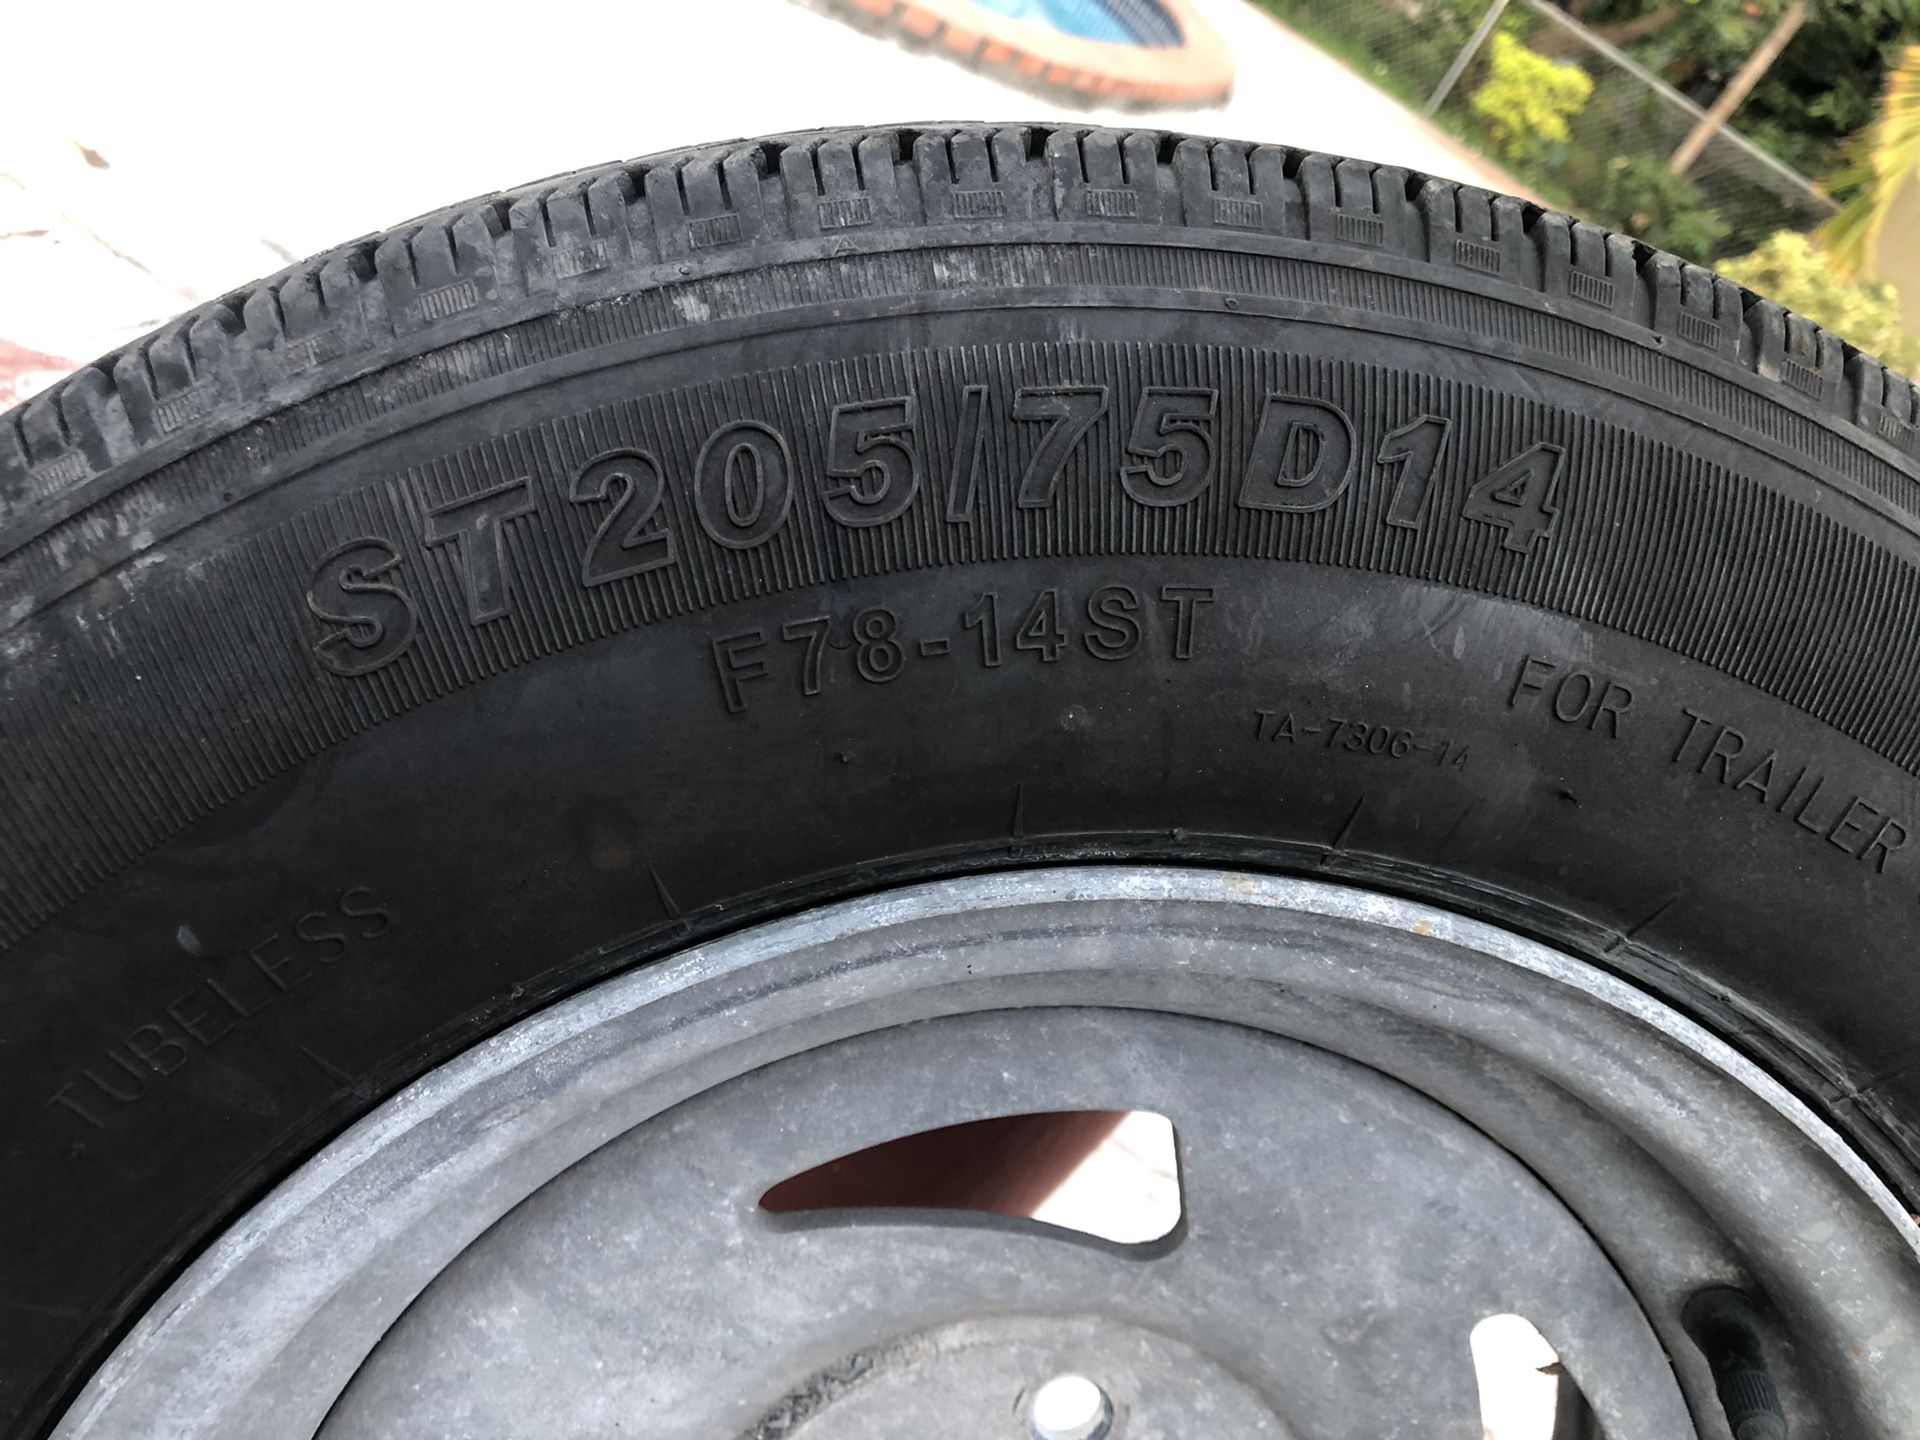 Trailer /Rim and tire